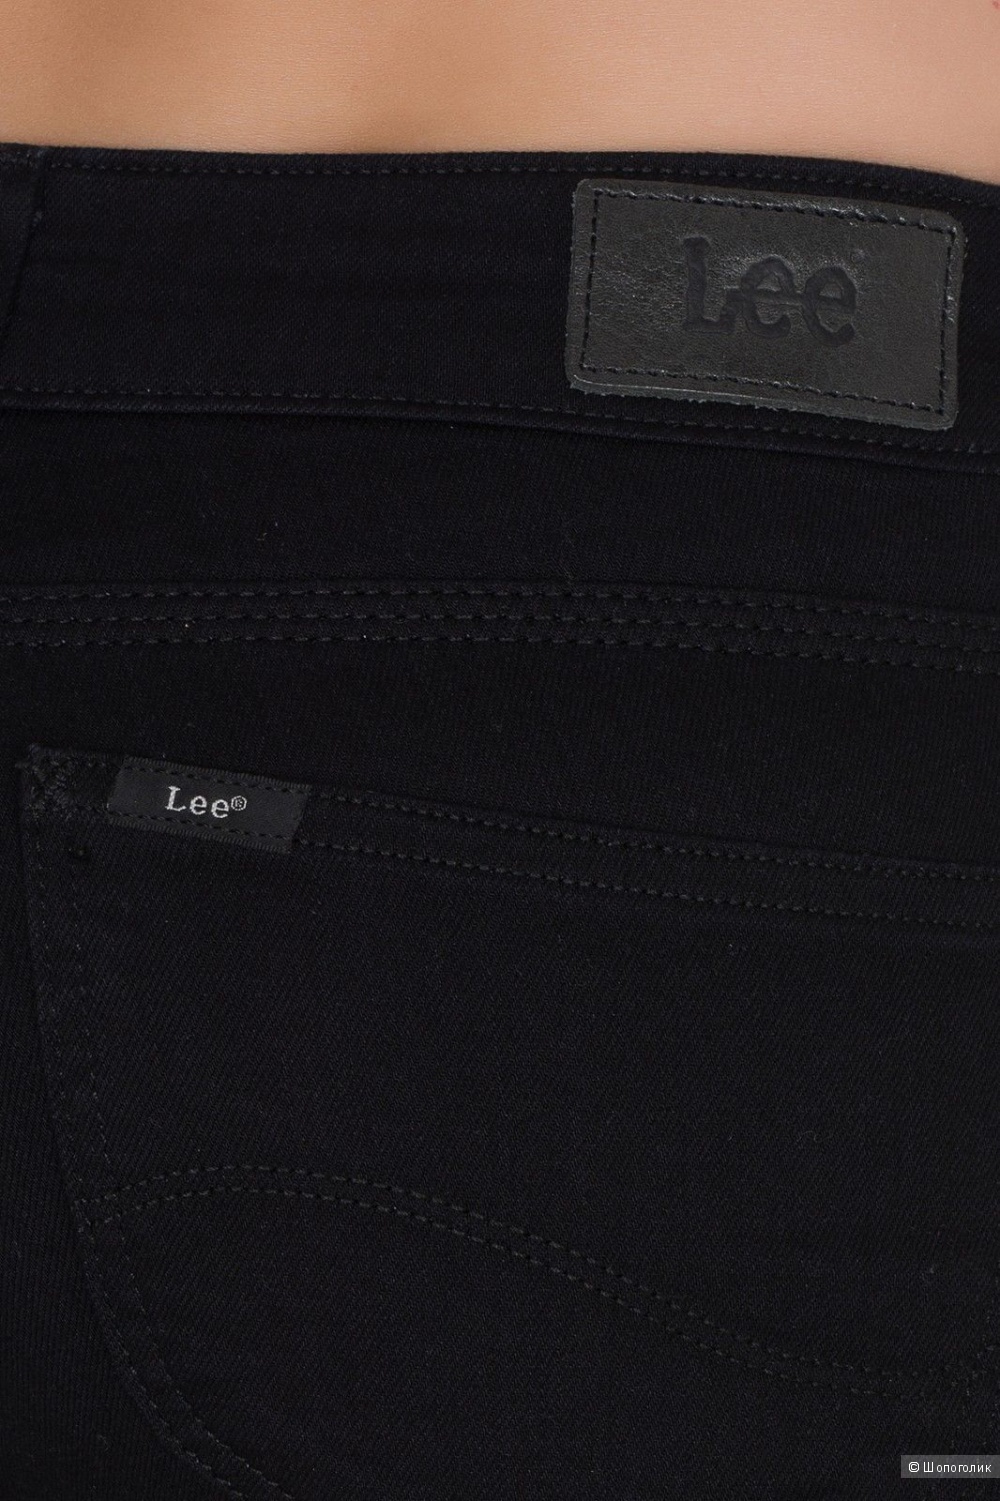 Джинсы Lee Women's Joliet Boot Cut Jeans, размер 27/31, новые